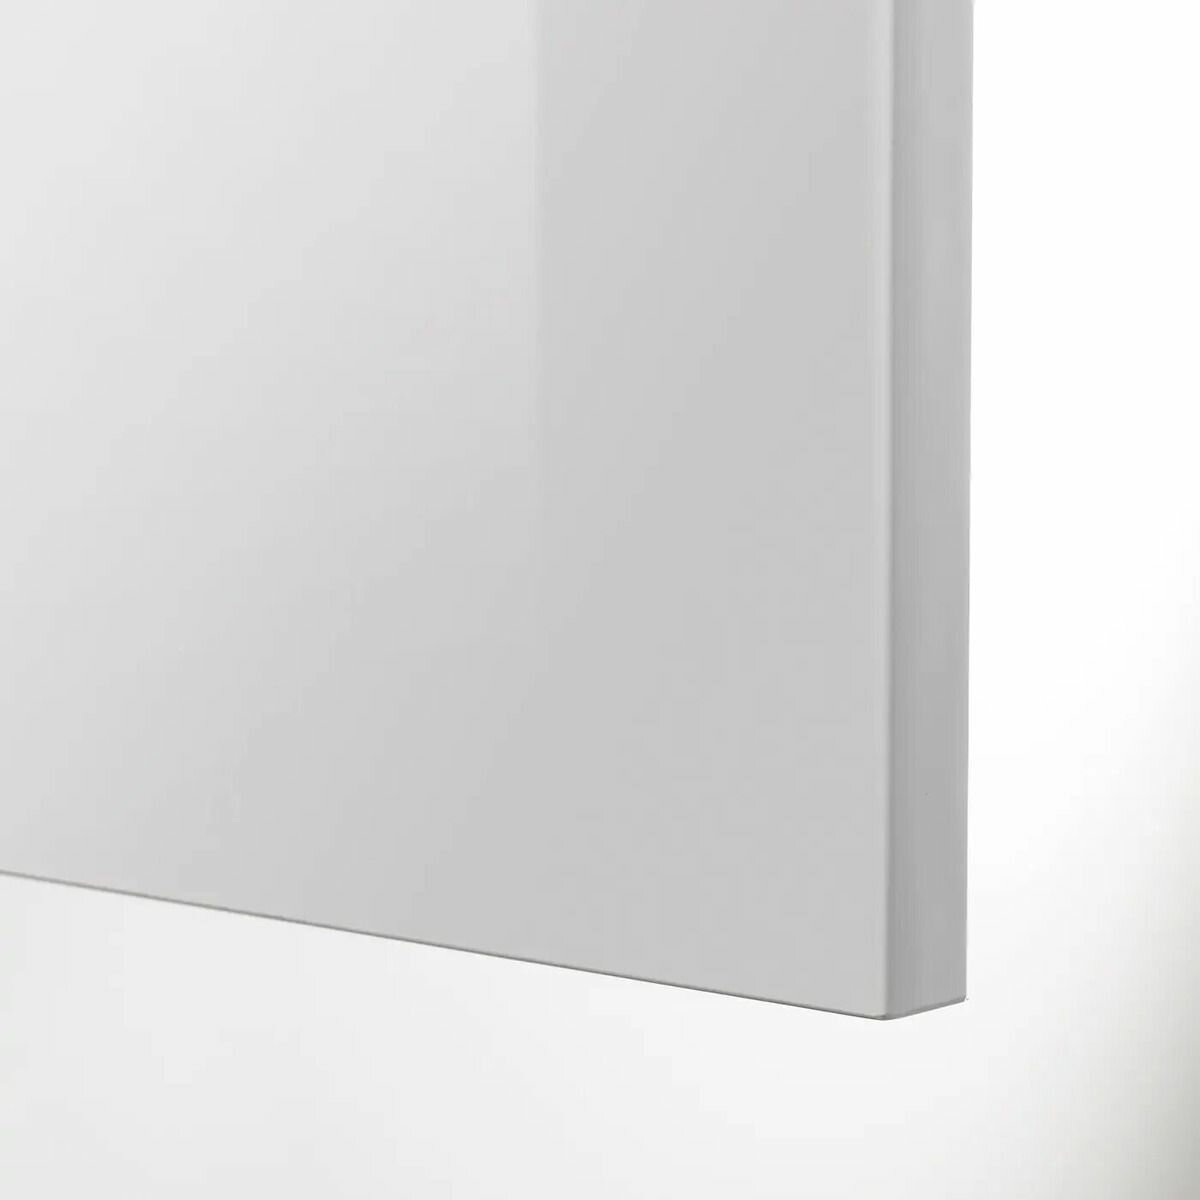 Фронтальная панель ящика IKEARINGHULT рингульт 40x40 см глянцевый светло-серый